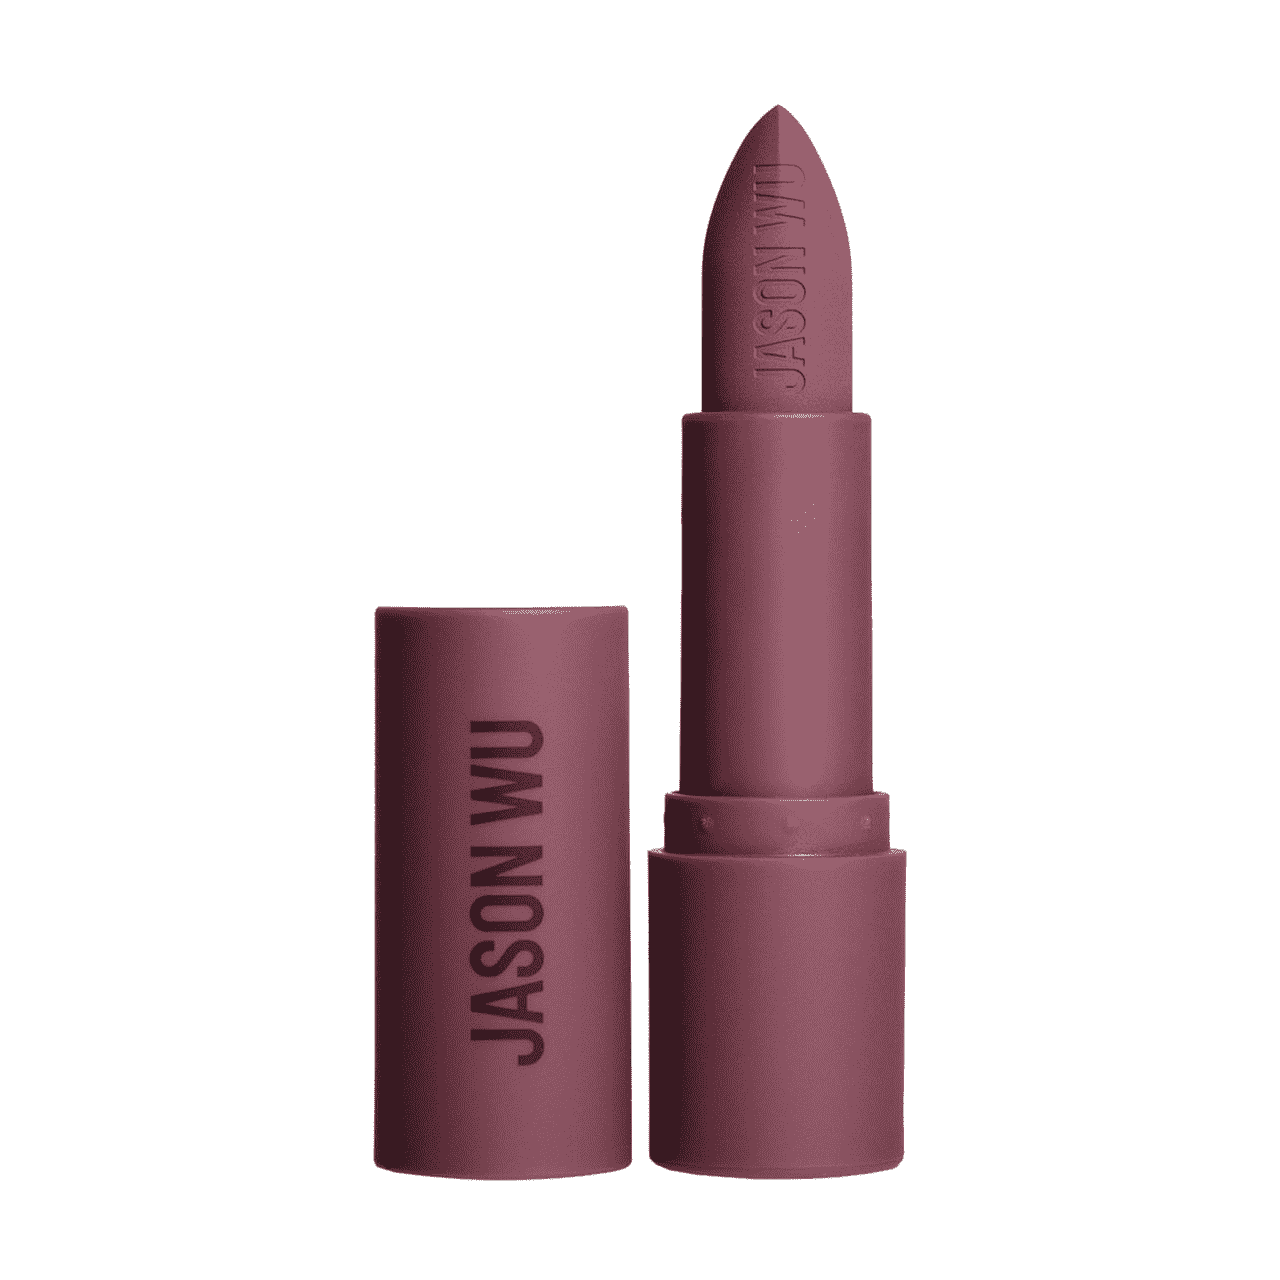 Jason Wu Beauty Hot Fluff Lipstick Matter Beeren-Lippenstift in passender matter Beerentube auf weißem Hintergrund